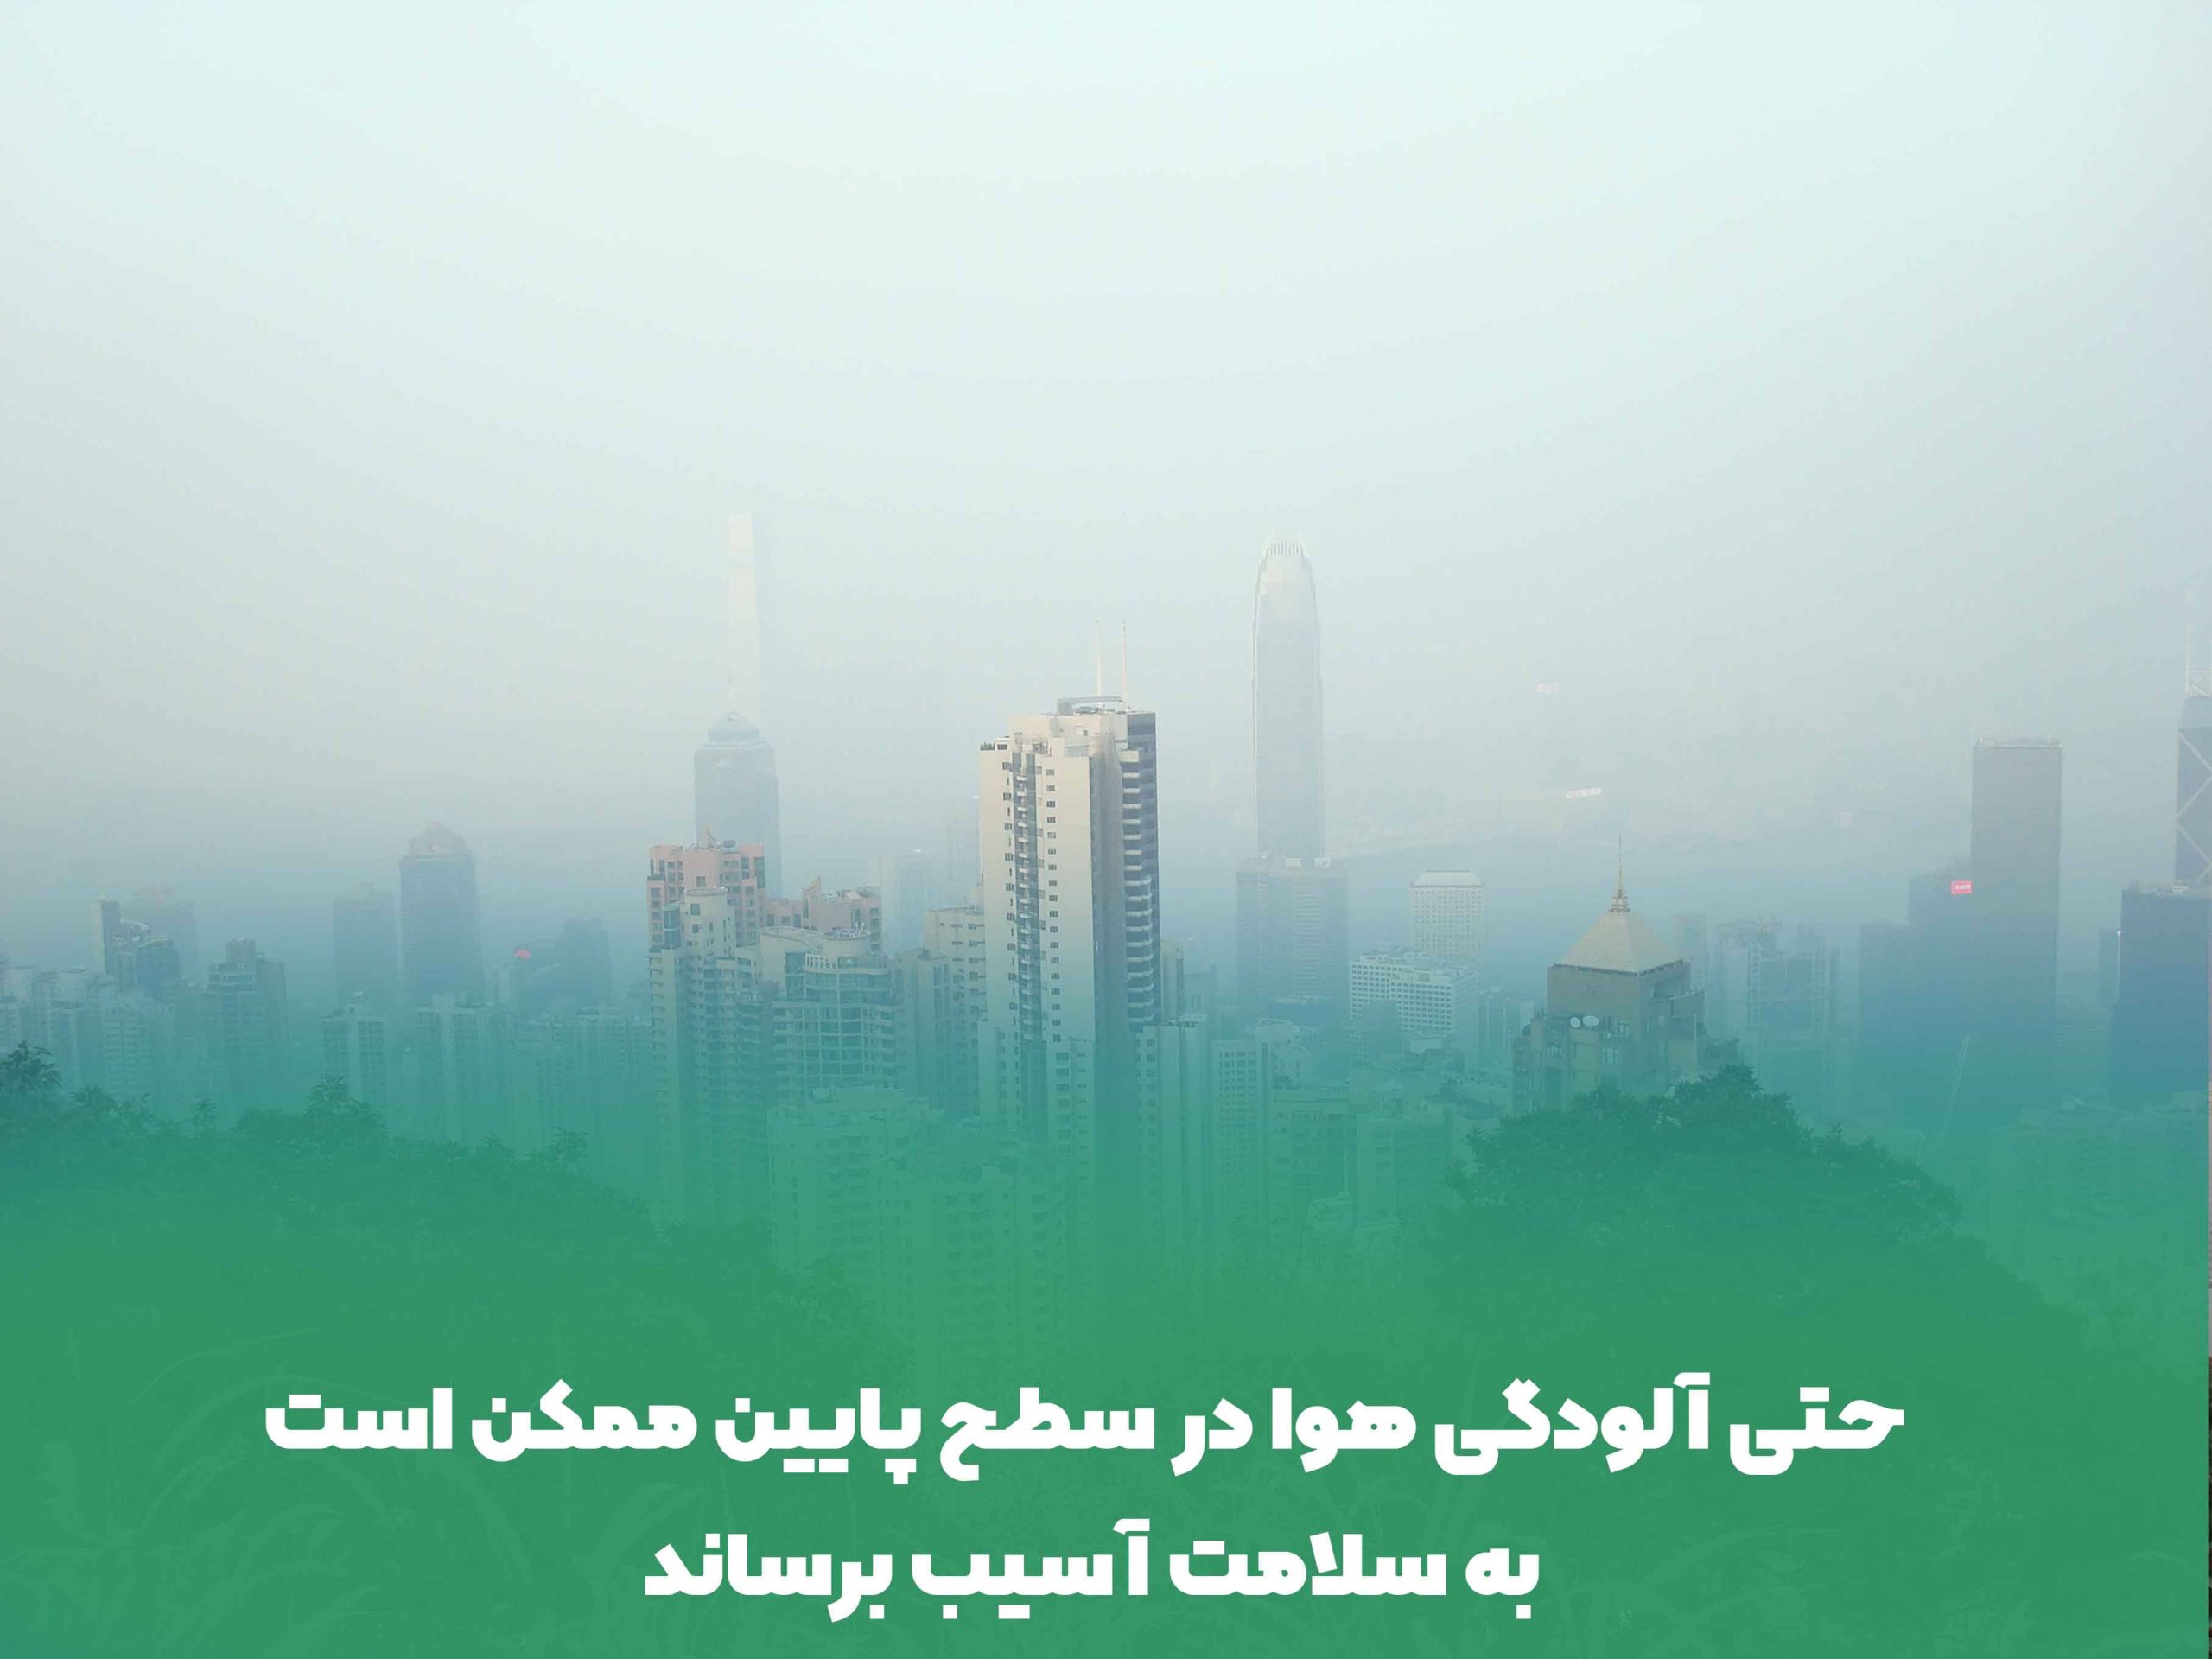 حتی آلودگی هوا در سطح پایین ممکن است به سلامت آسیب برساند